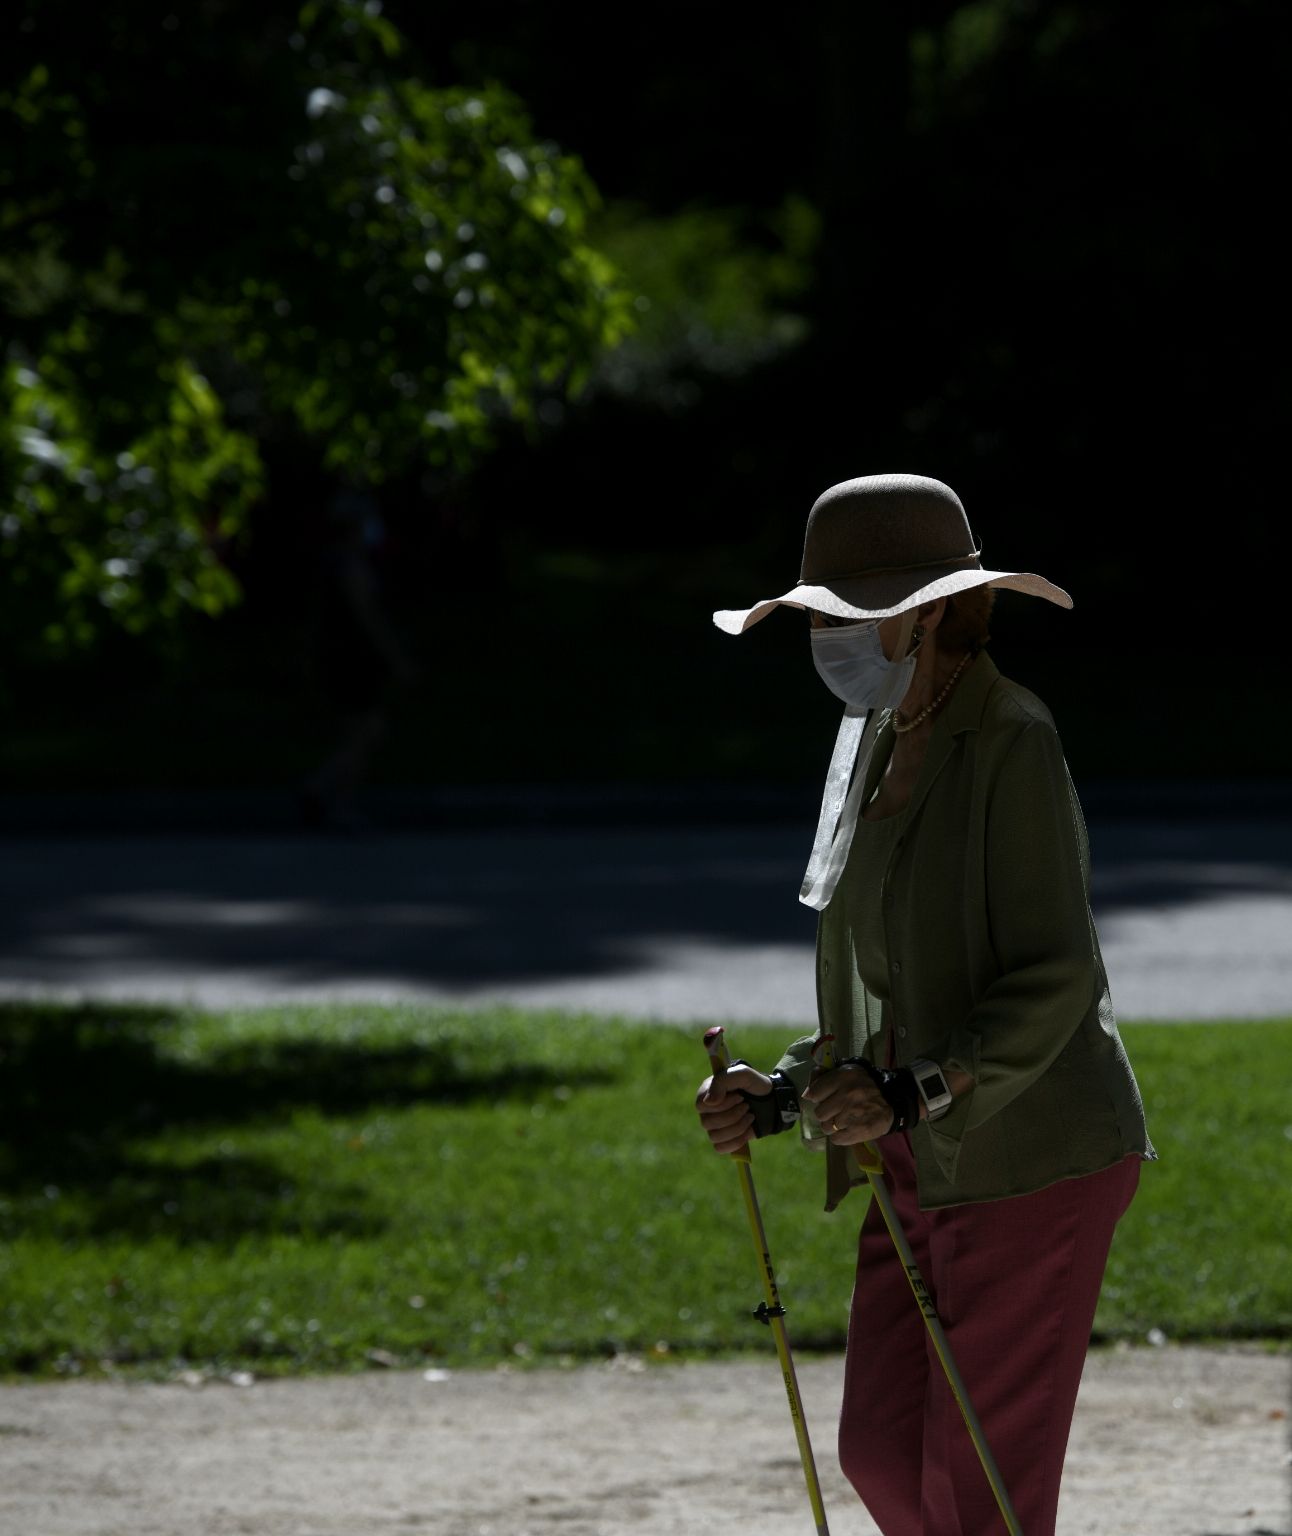 EuropaPress 3212589 mujer camina bastones parque retiro madrid espana 29 junio 2020 calor pone